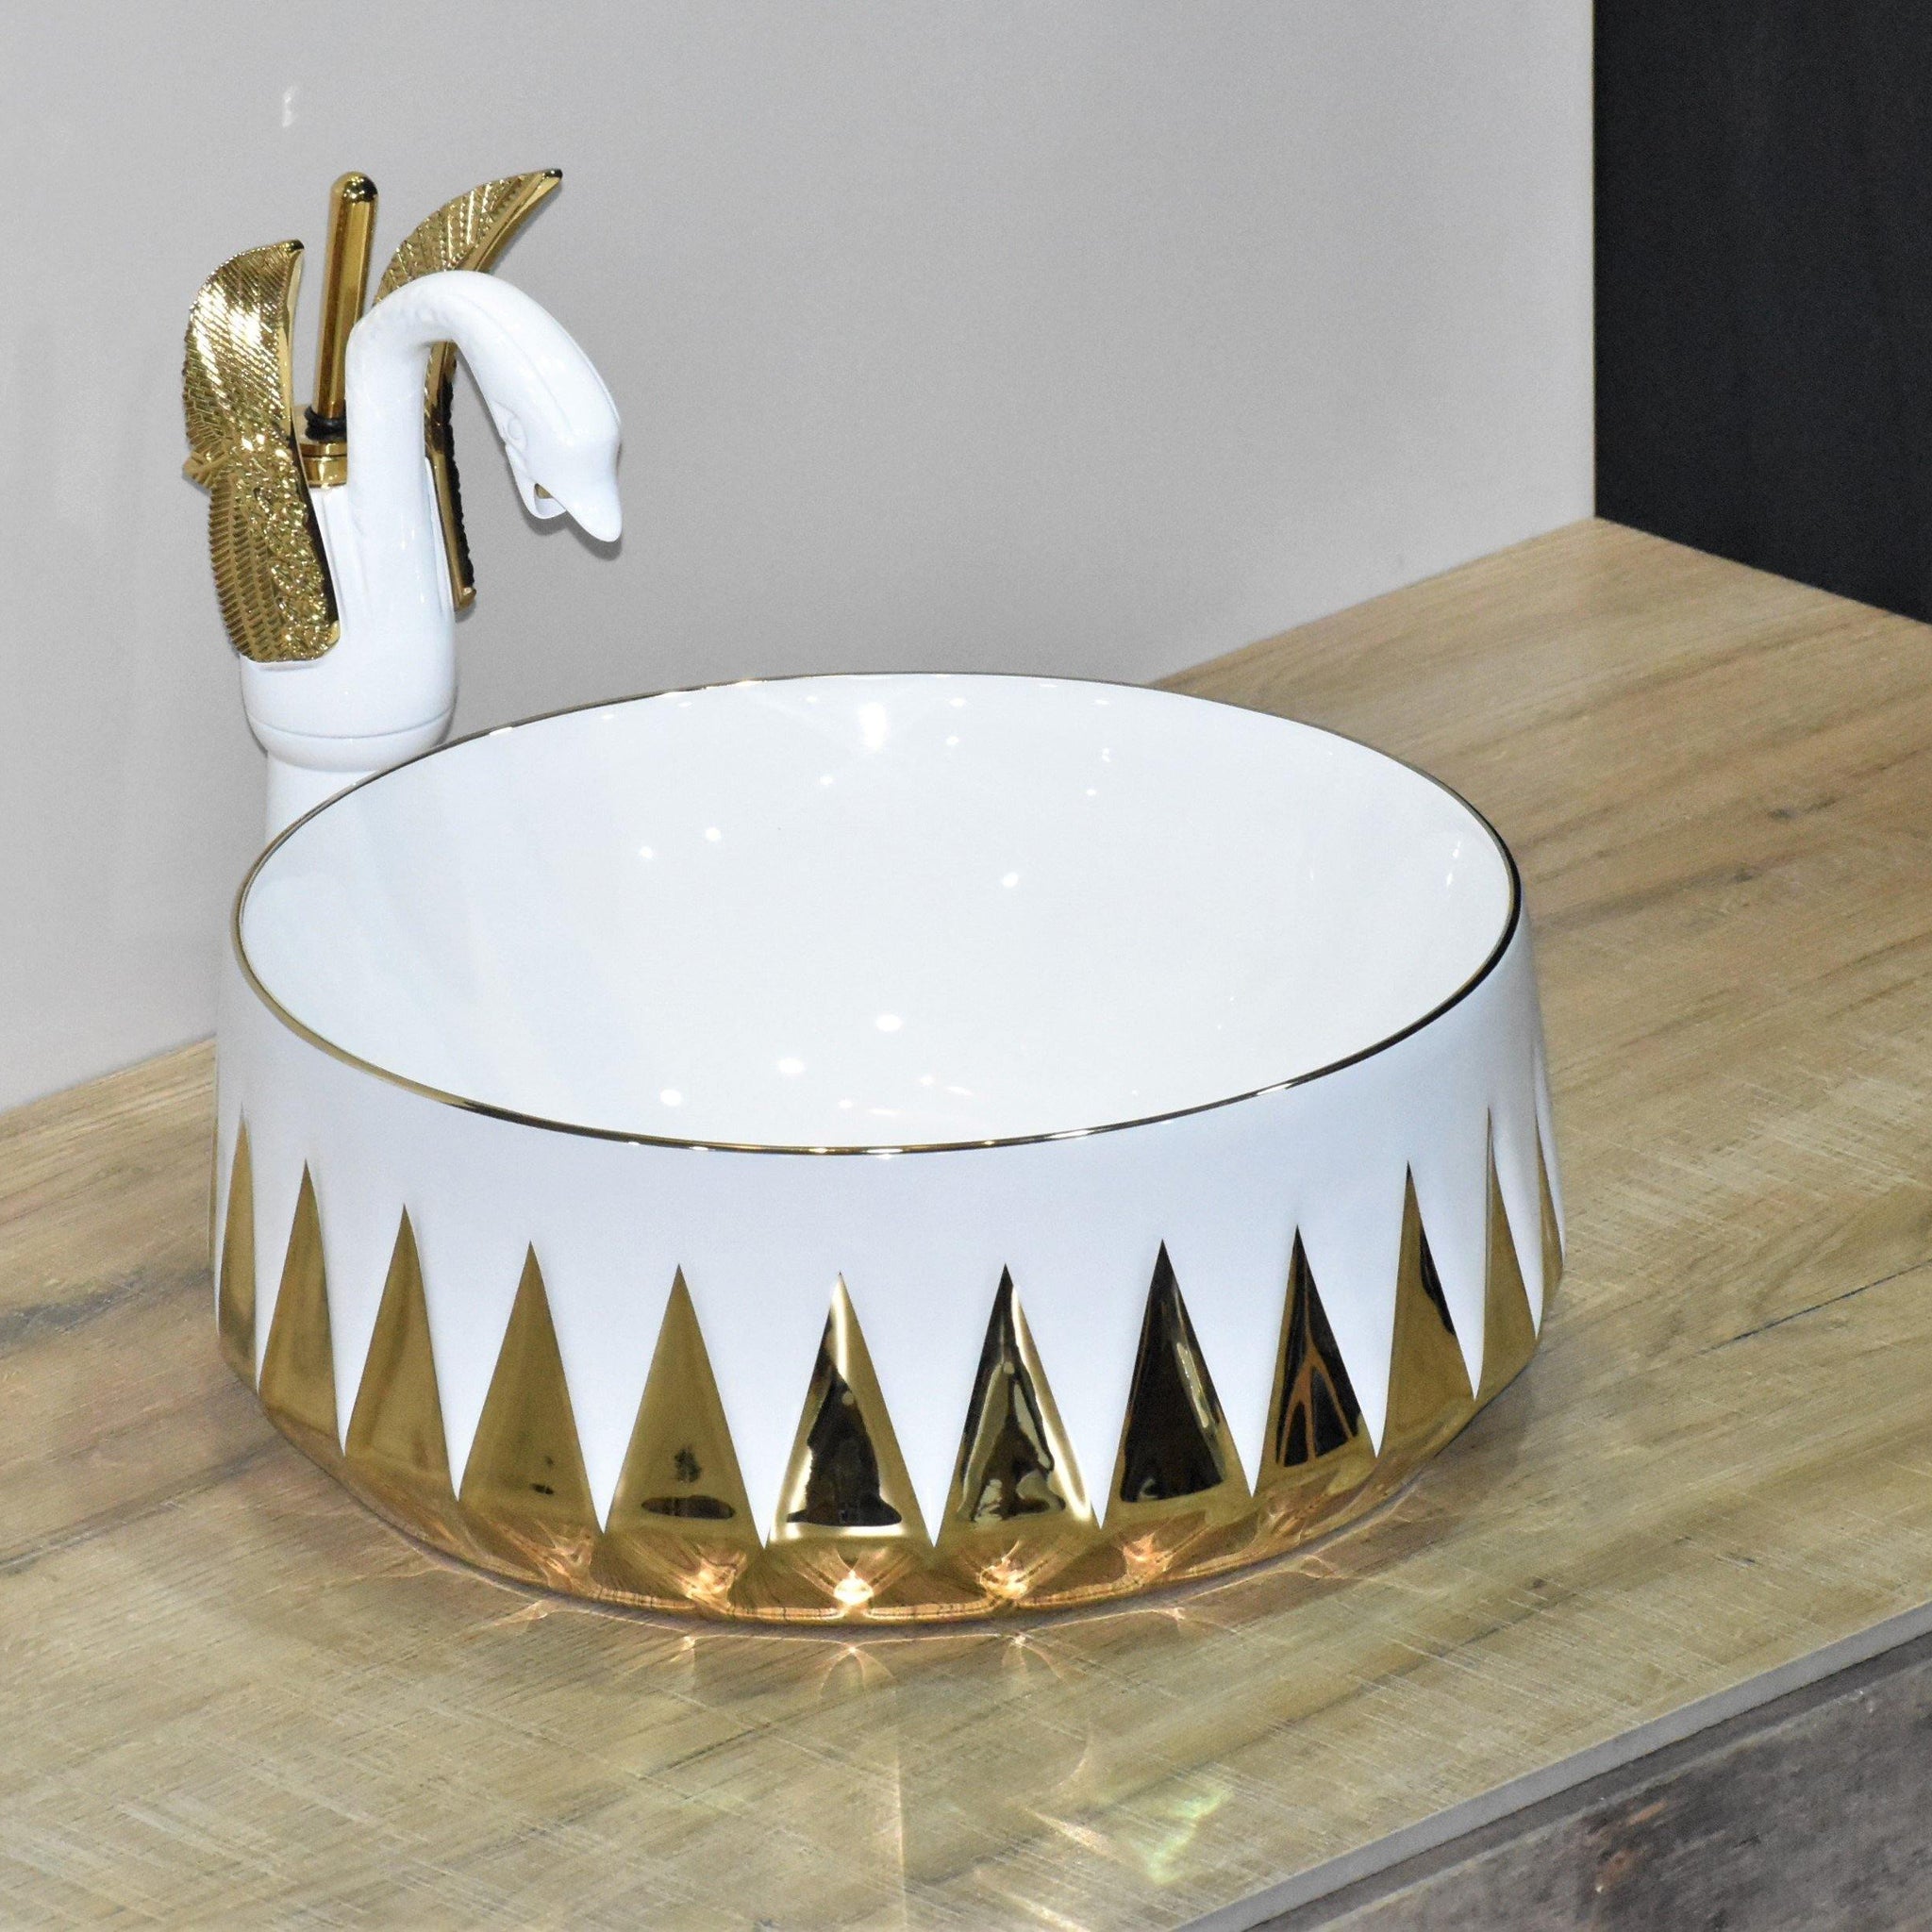 Designer Ceramic Wash Basin Vessel Sink Over or Above Counter Top Wash Basin for Bathroom Round Shape White Gold Color 36 x 36 x 14 cm Only Wash Basin - Bath Outlet